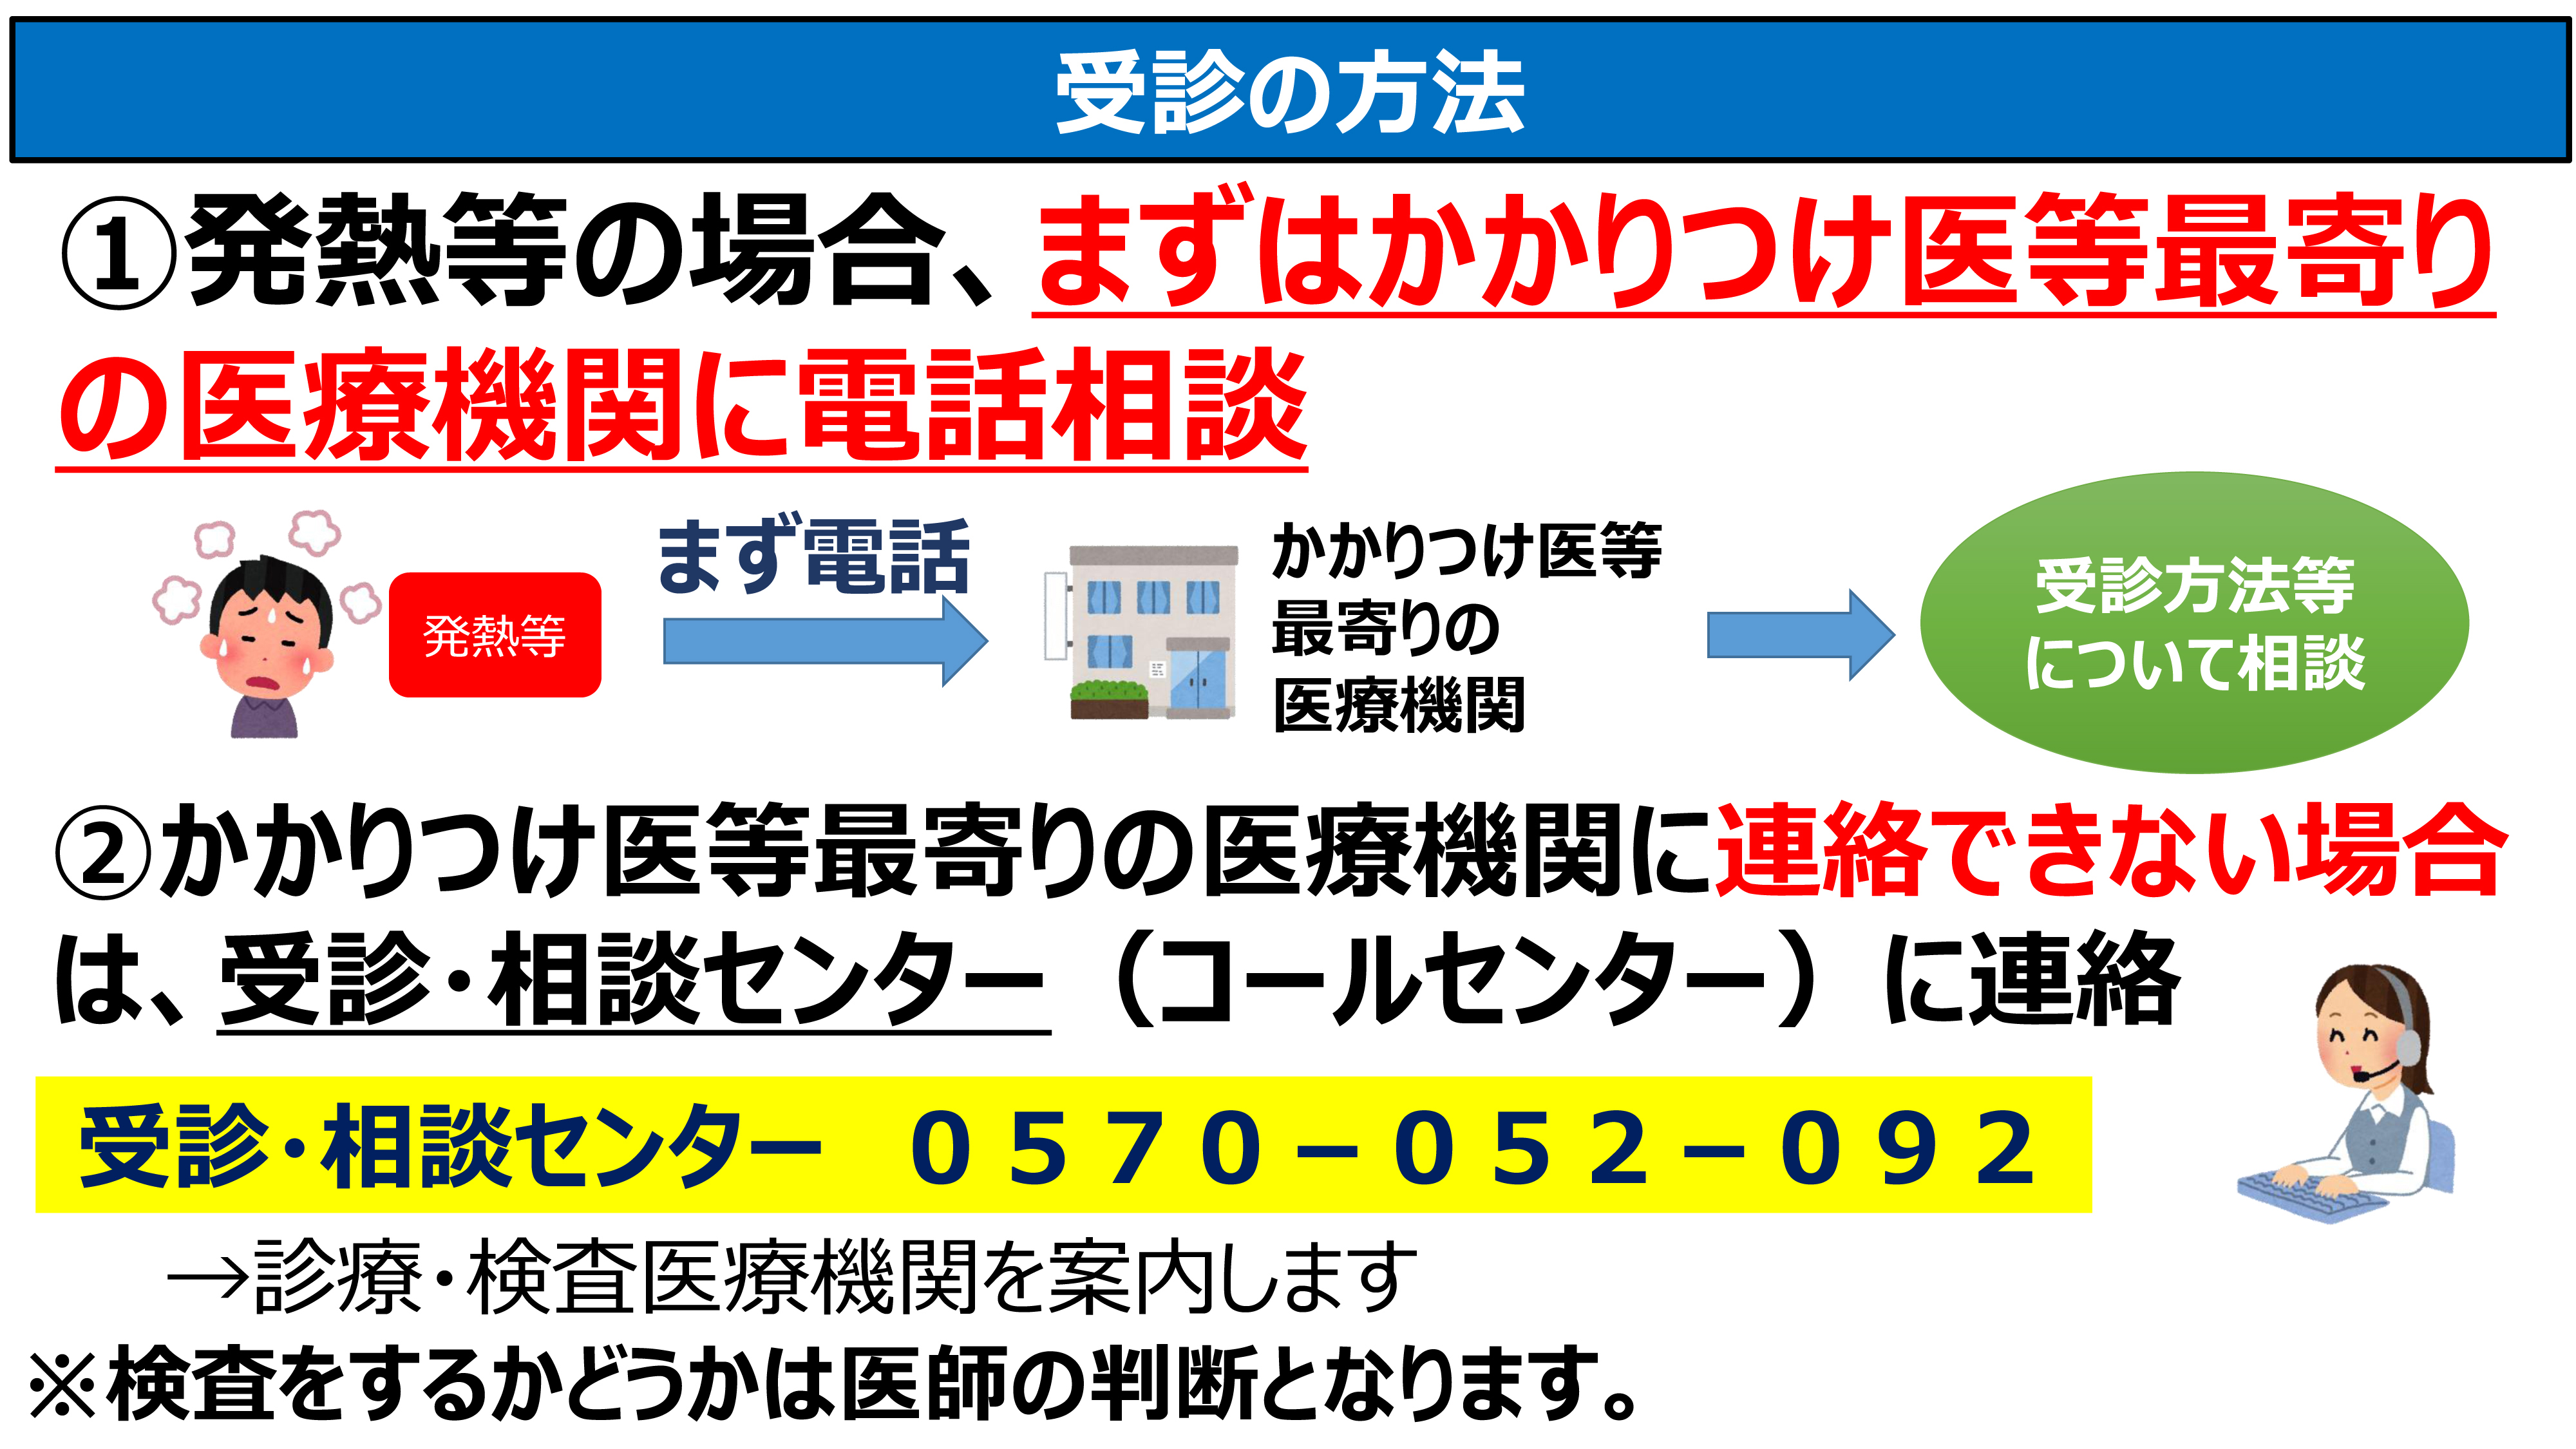 情報 栃木 最新 コロナ 者 ウイルス 県 感染